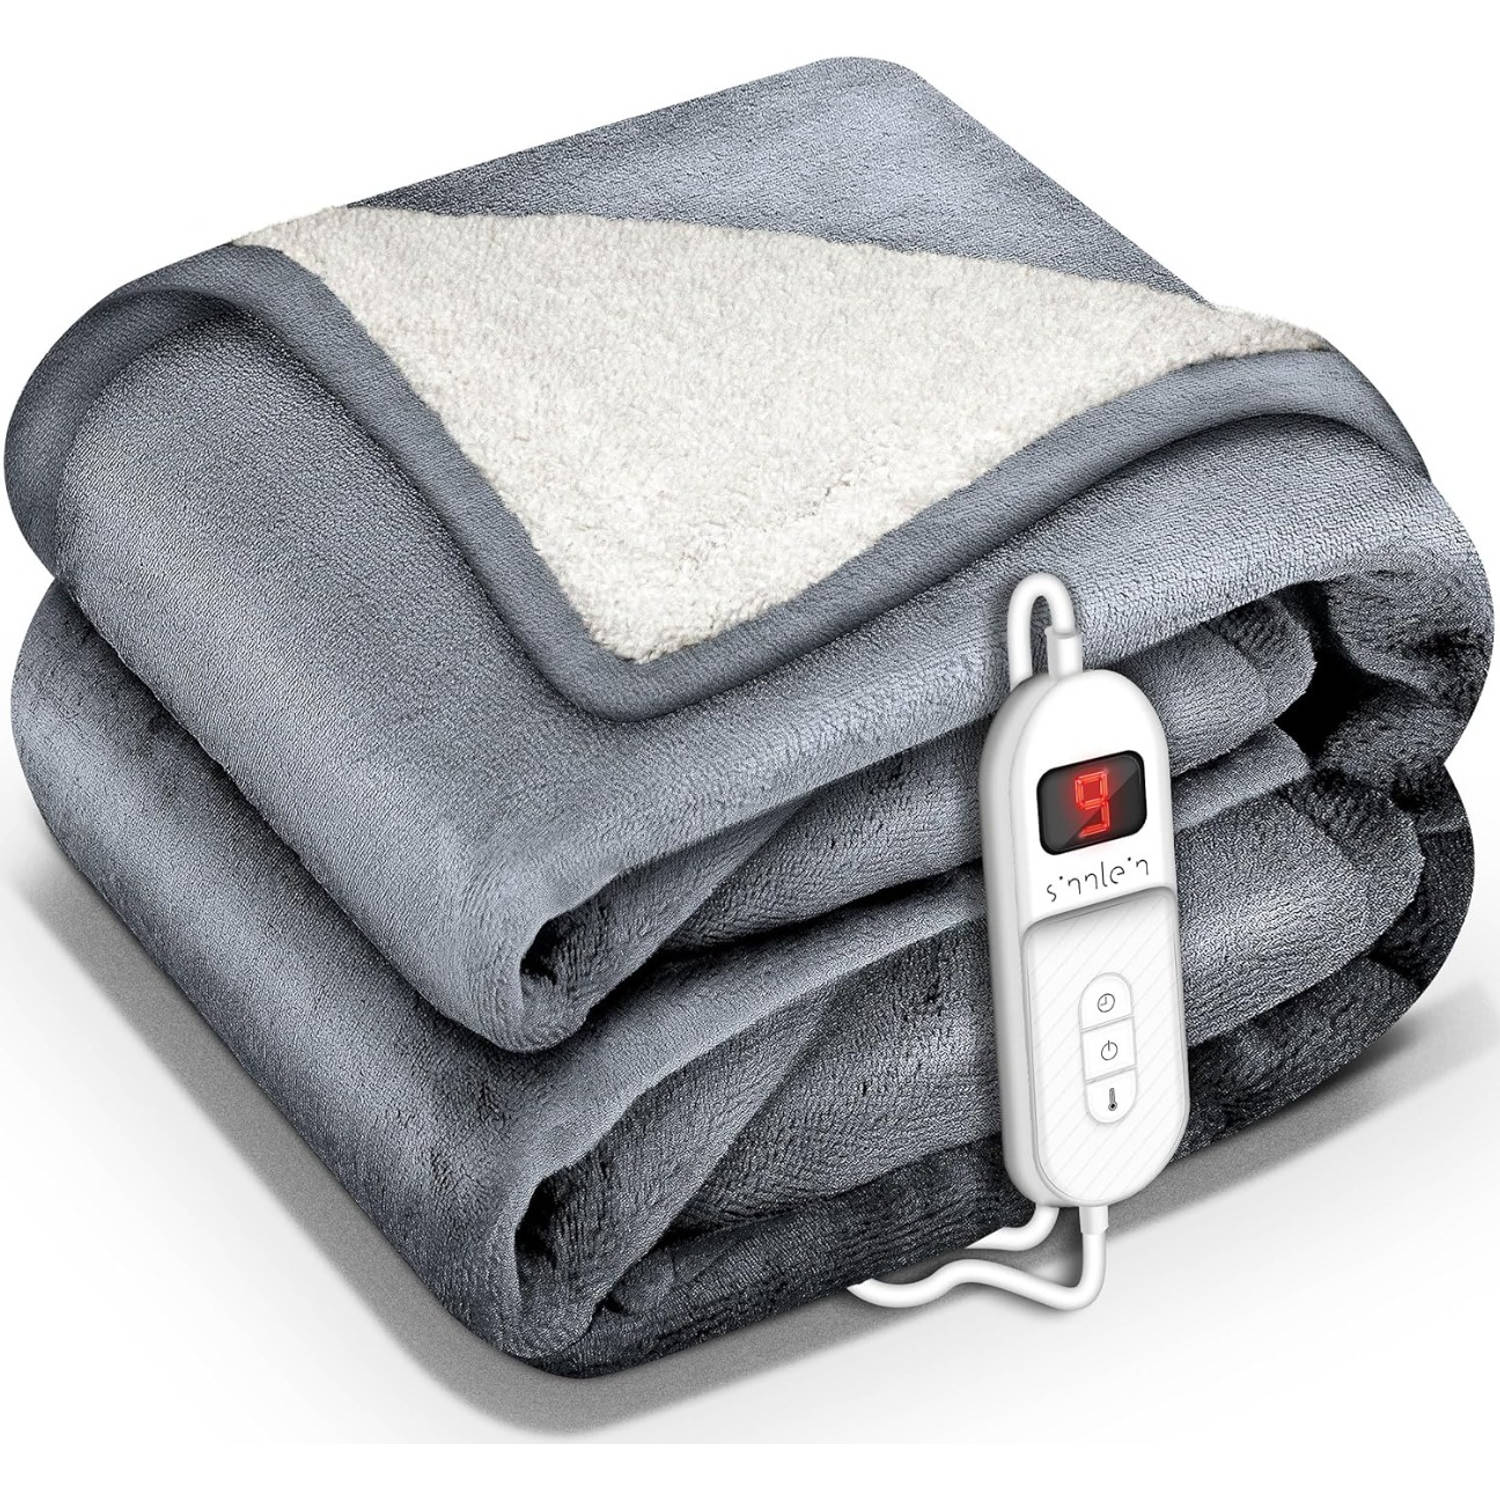 Sinnlein- Elektrische deken met automatische uitschakeling, lichtgrijs, 200 x 180 cm, warmtedeken me